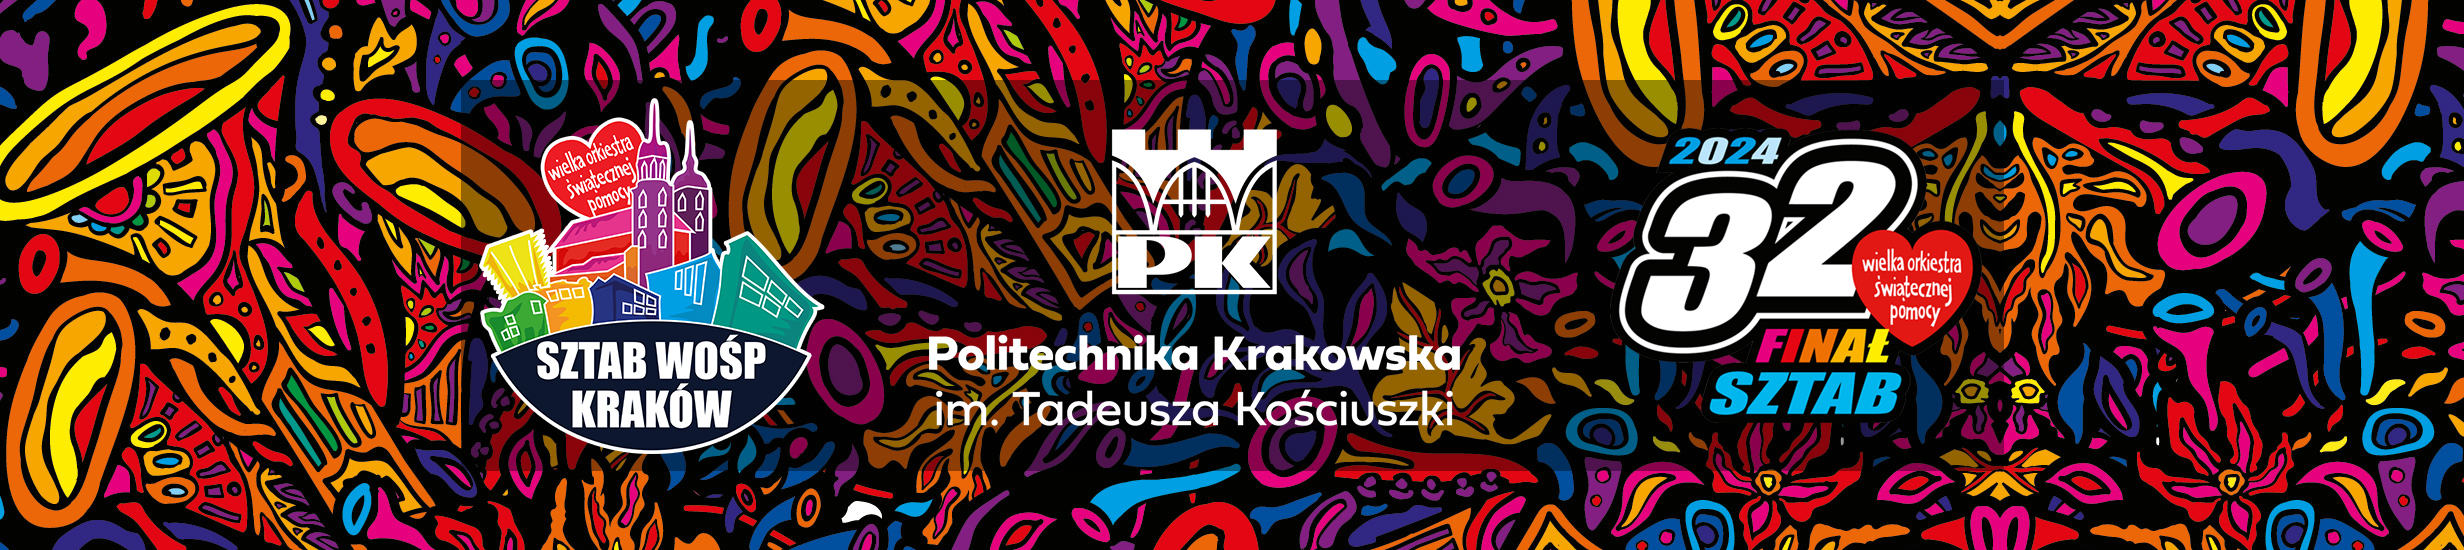 Krakowski Sztab Wielkiej Orkiestry Świątecznej Pomocy zagra na PK!